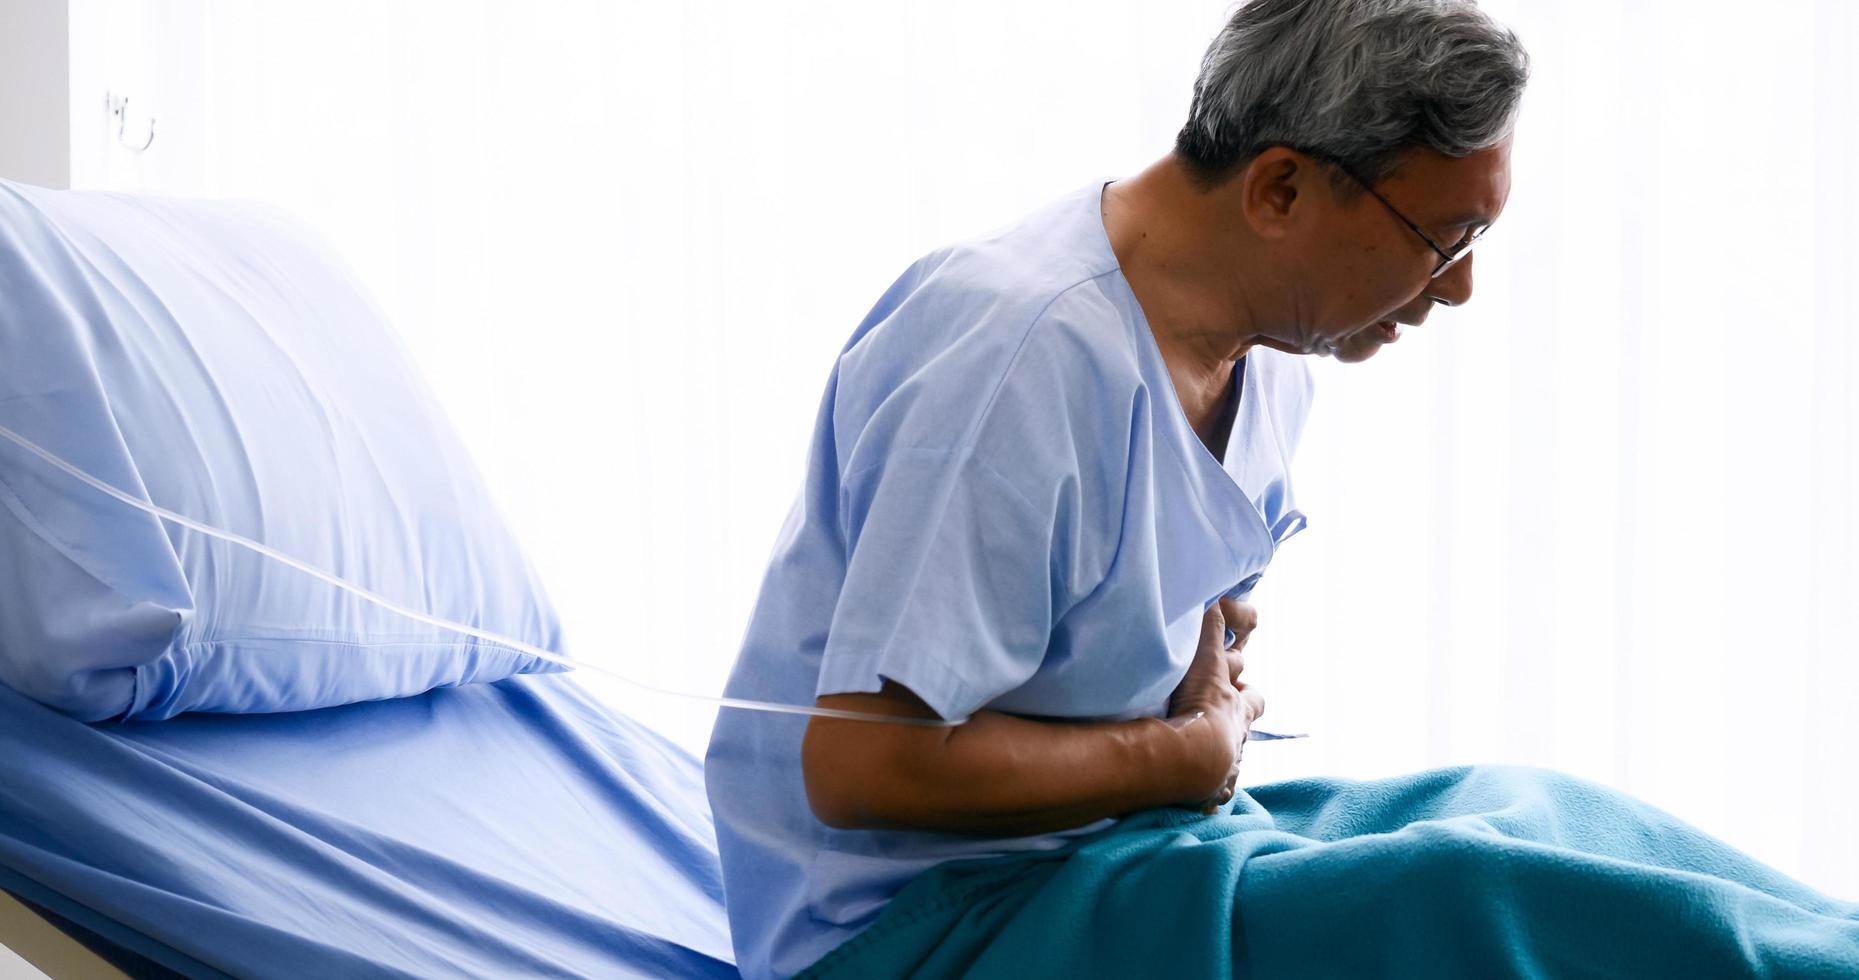 männlicher patient mit brustschmerzen auf dem krankenbett im krankenhauszimmer. foto